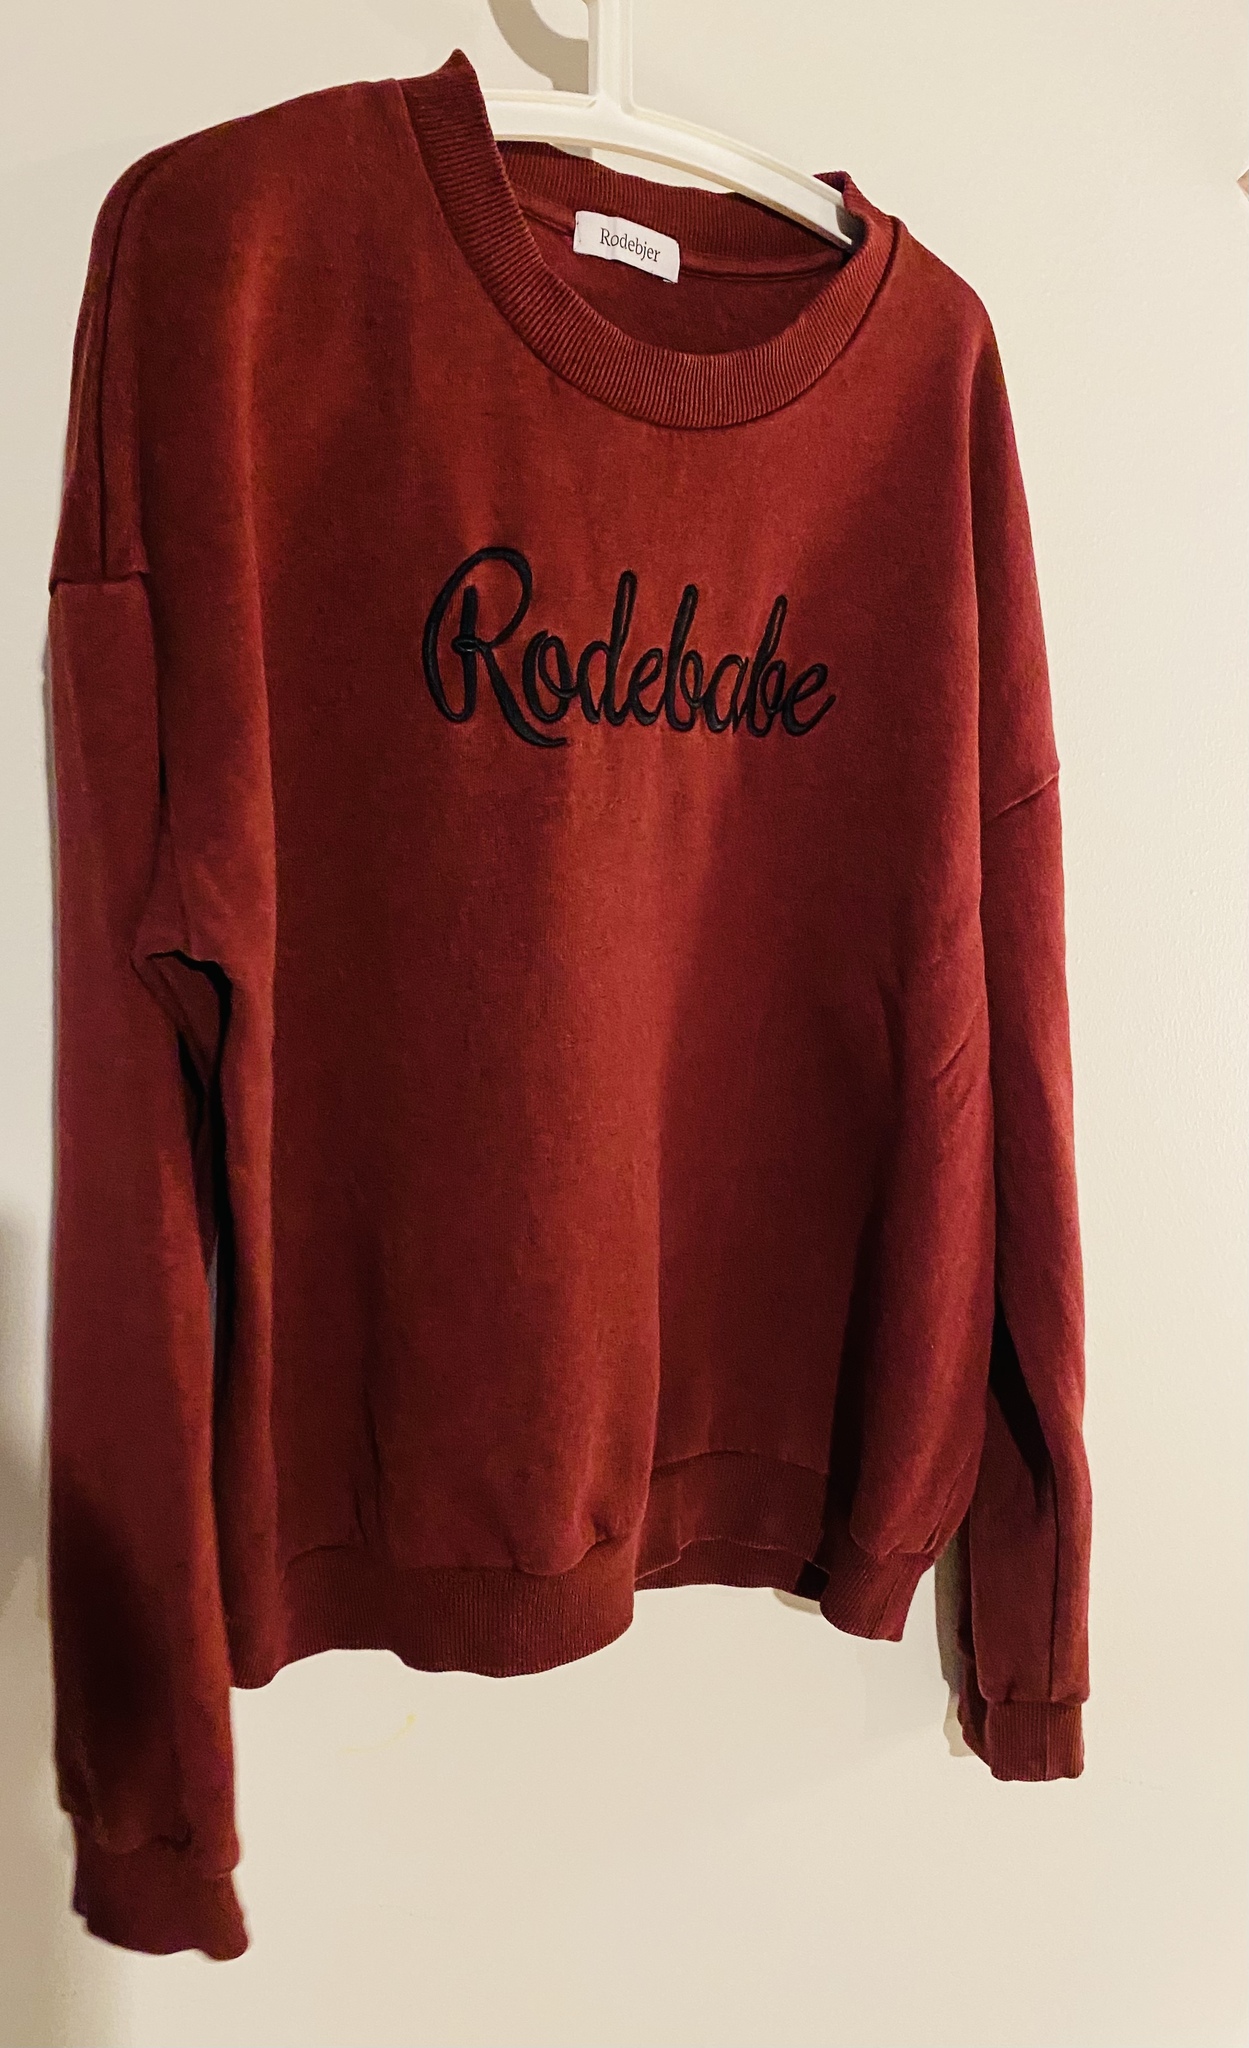 Rodebjer Rodebabe-tröja